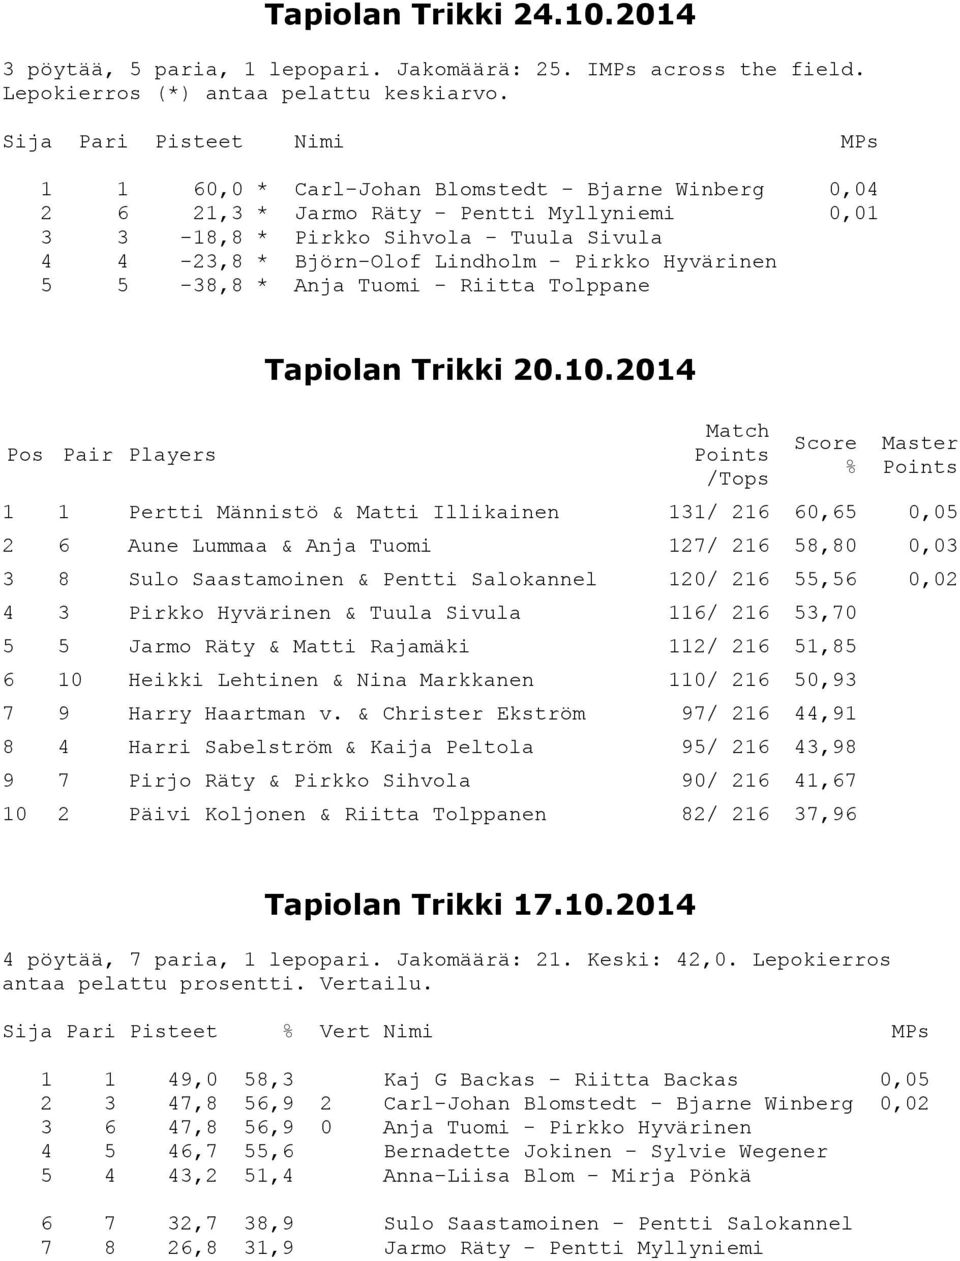 - Pirkko Hyvärinen 5 5-38,8 * Anja Tuomi - Riitta Tolppane Pos Pair Players Tapiolan Trikki 20.10.